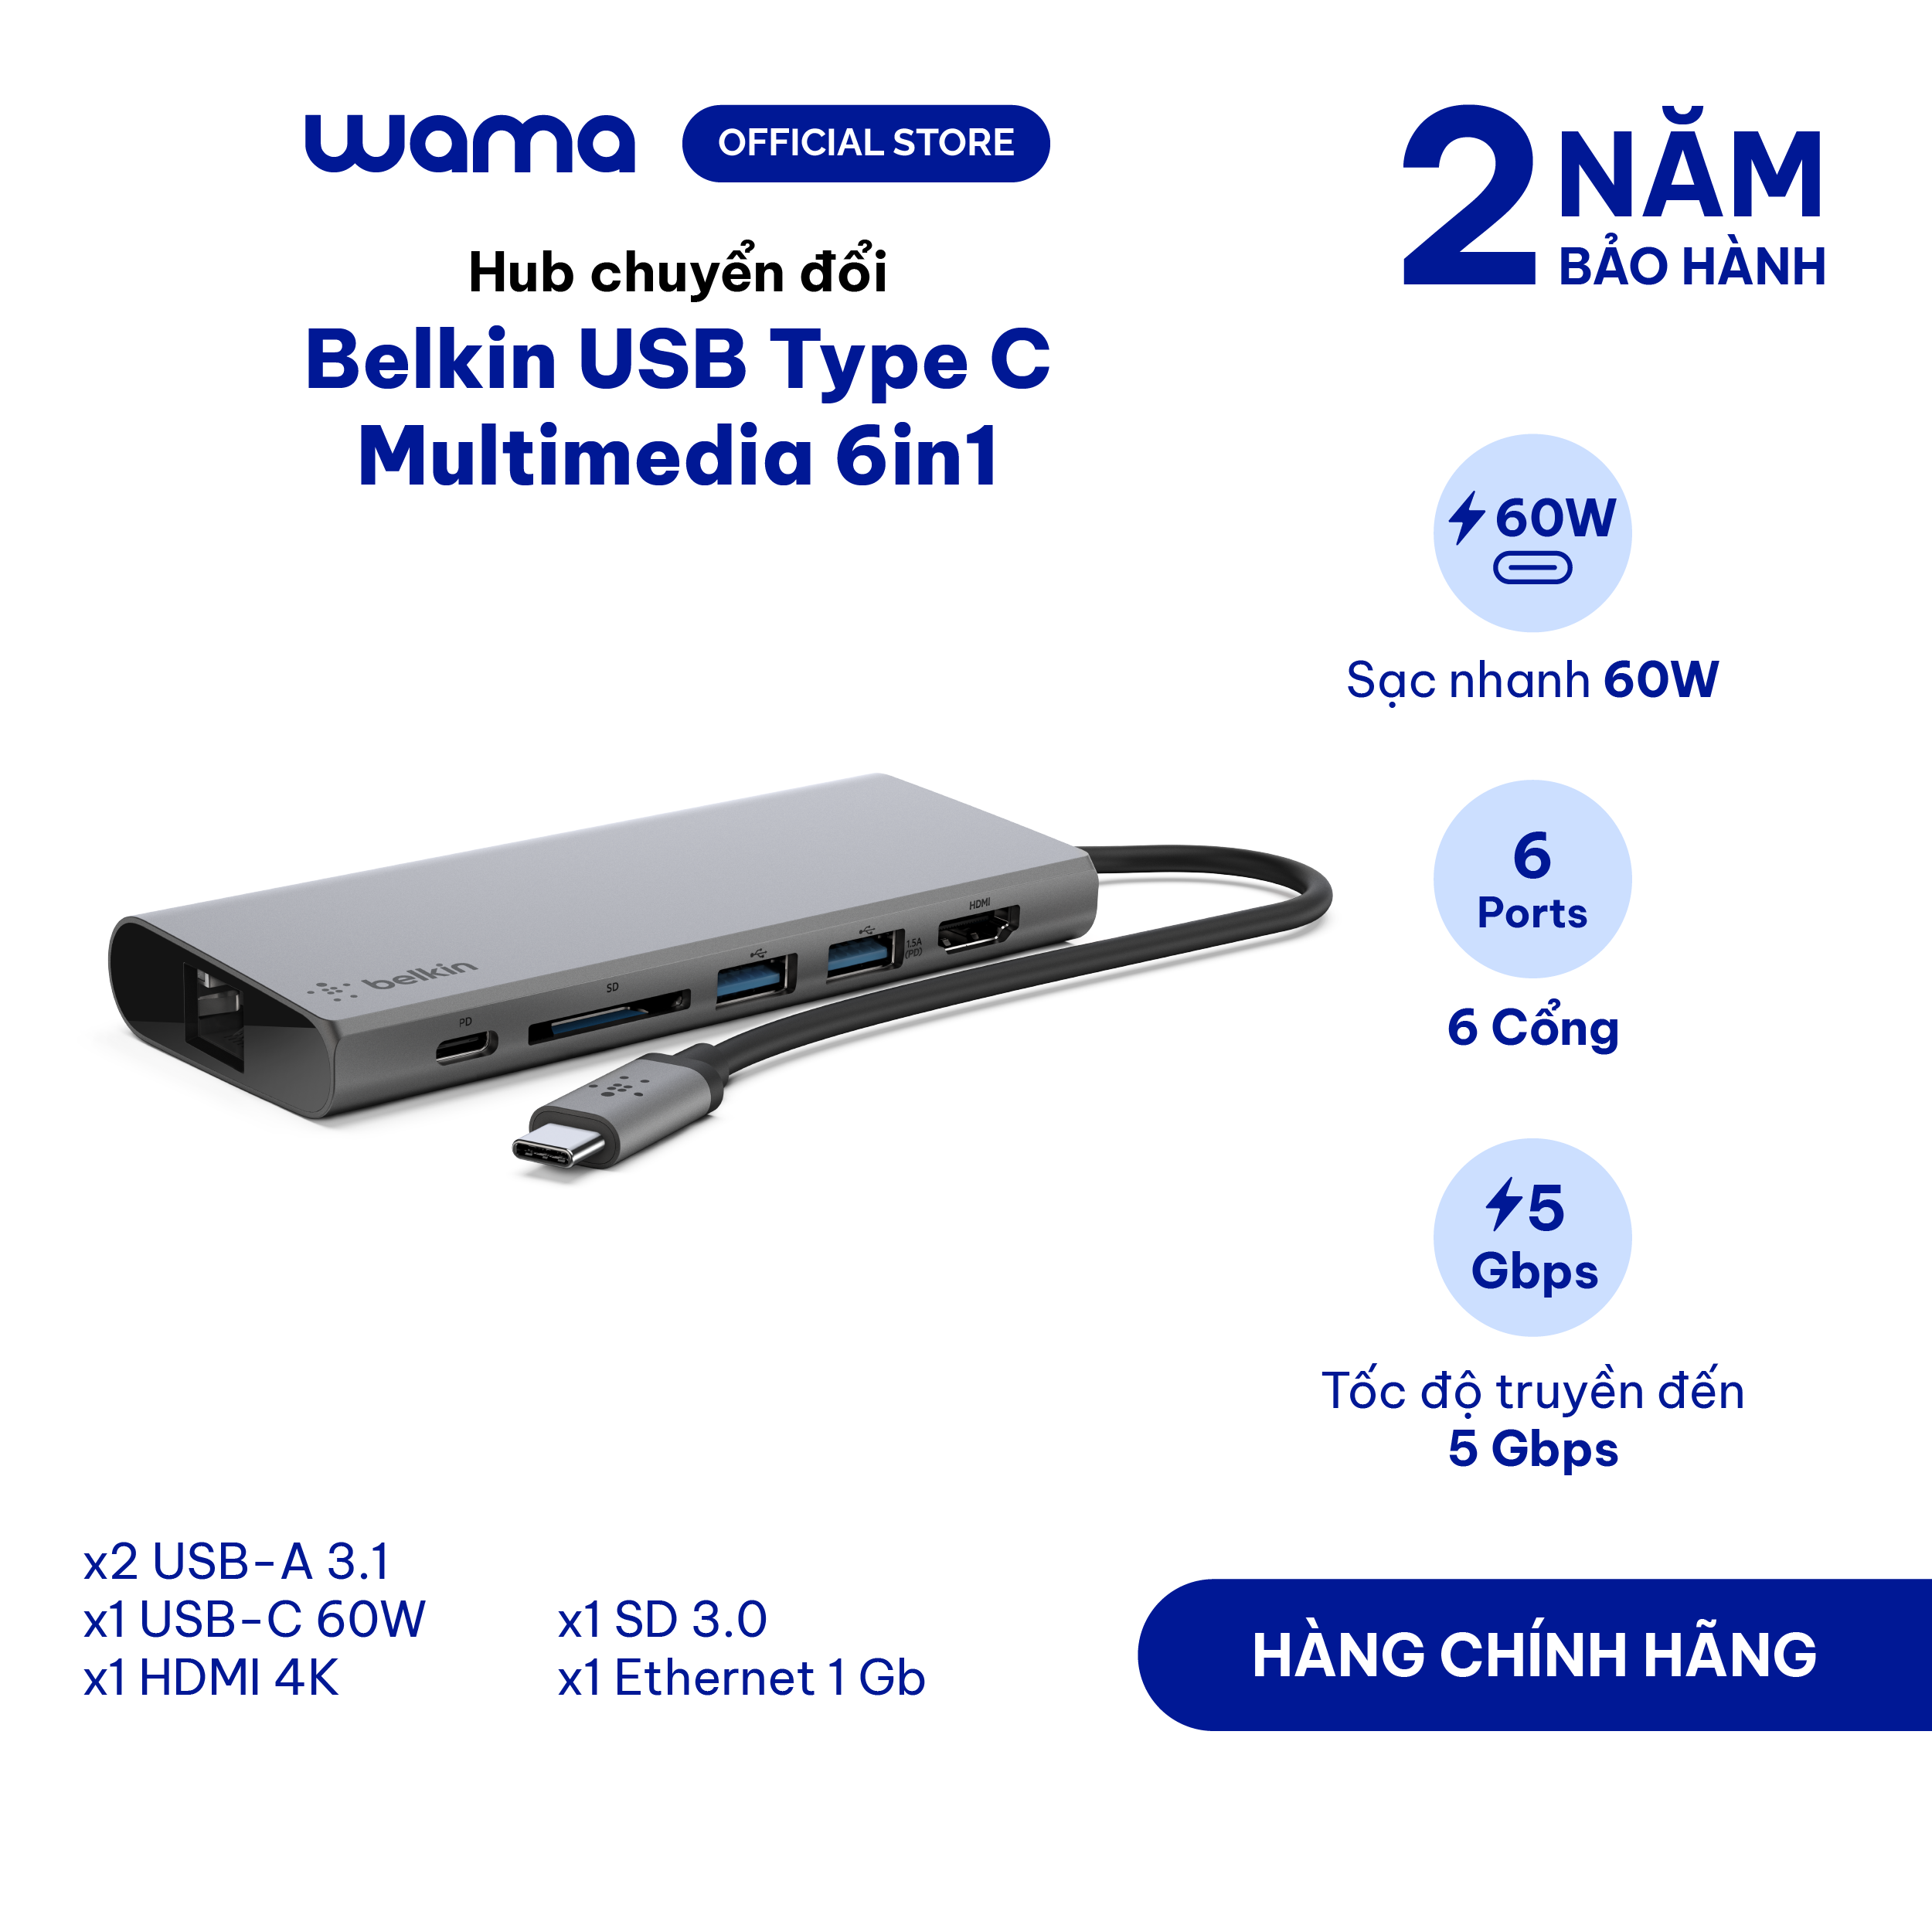 Hub chuyển đổi USB Type C Multimedia 6 in1 Belkin - Hàng chính hãng - Bảo hành 2 năm